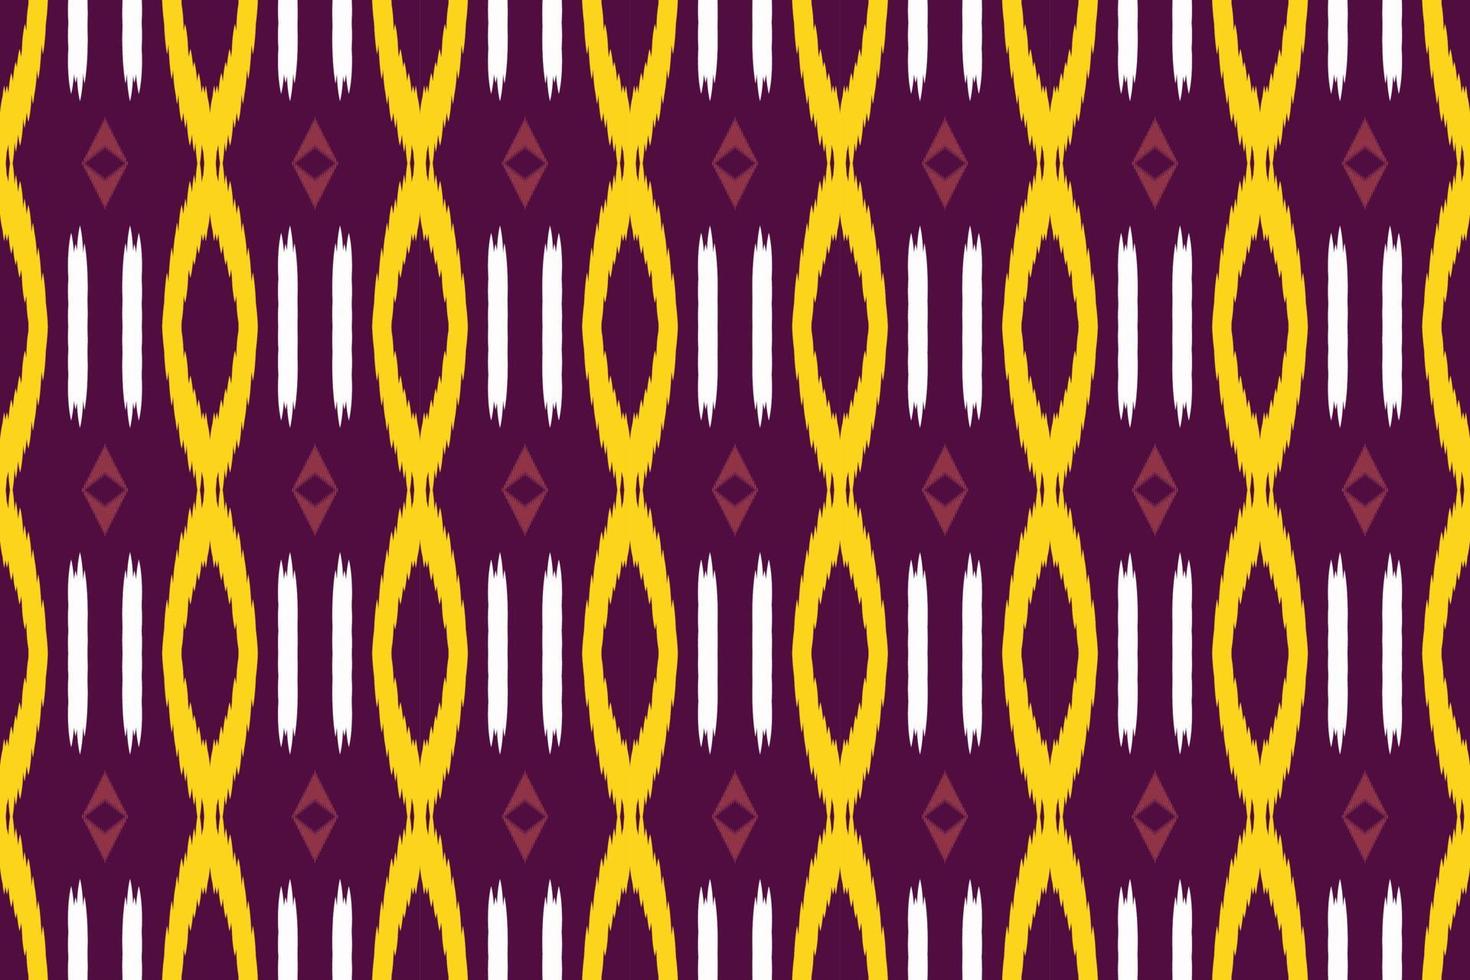 ikat diamante fundos tribais bornéu batik escandinavo textura boêmia design de vetor digital para impressão saree kurti tecido pincel símbolos amostras